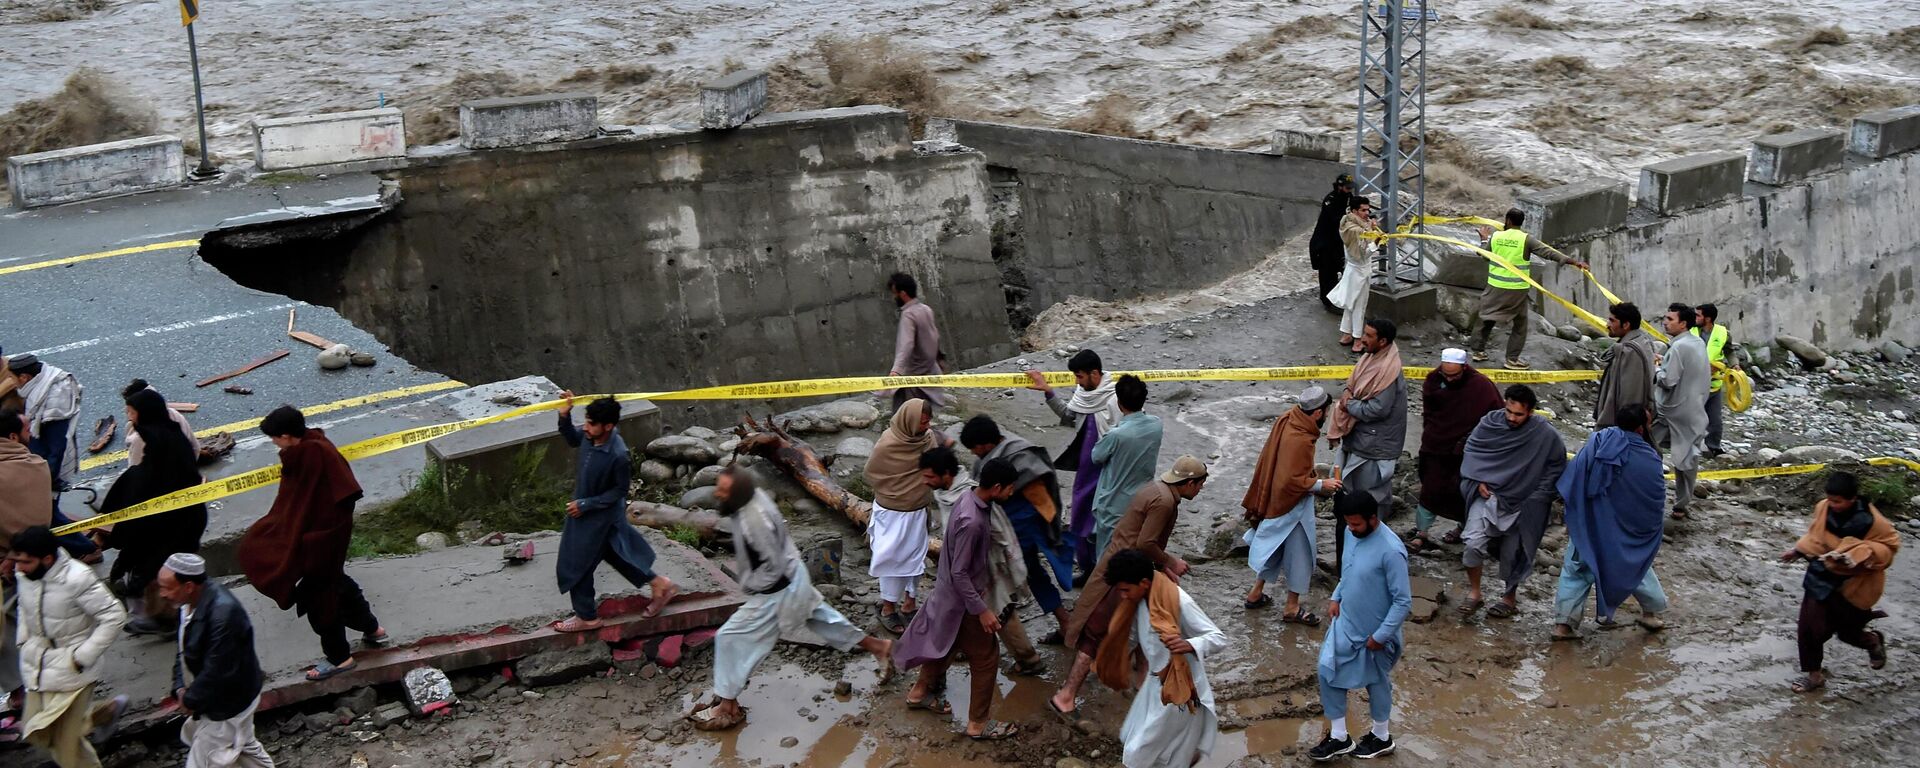 يتجمع الناس أمام طريق تضررت به مياه الفيضانات بعد هطول أمطار موسمية غزيرة في منطقة ماديان في شمال وادي سوات في باكستان في 27 أغسطس 2022. - - سبوتنيك عربي, 1920, 12.09.2022